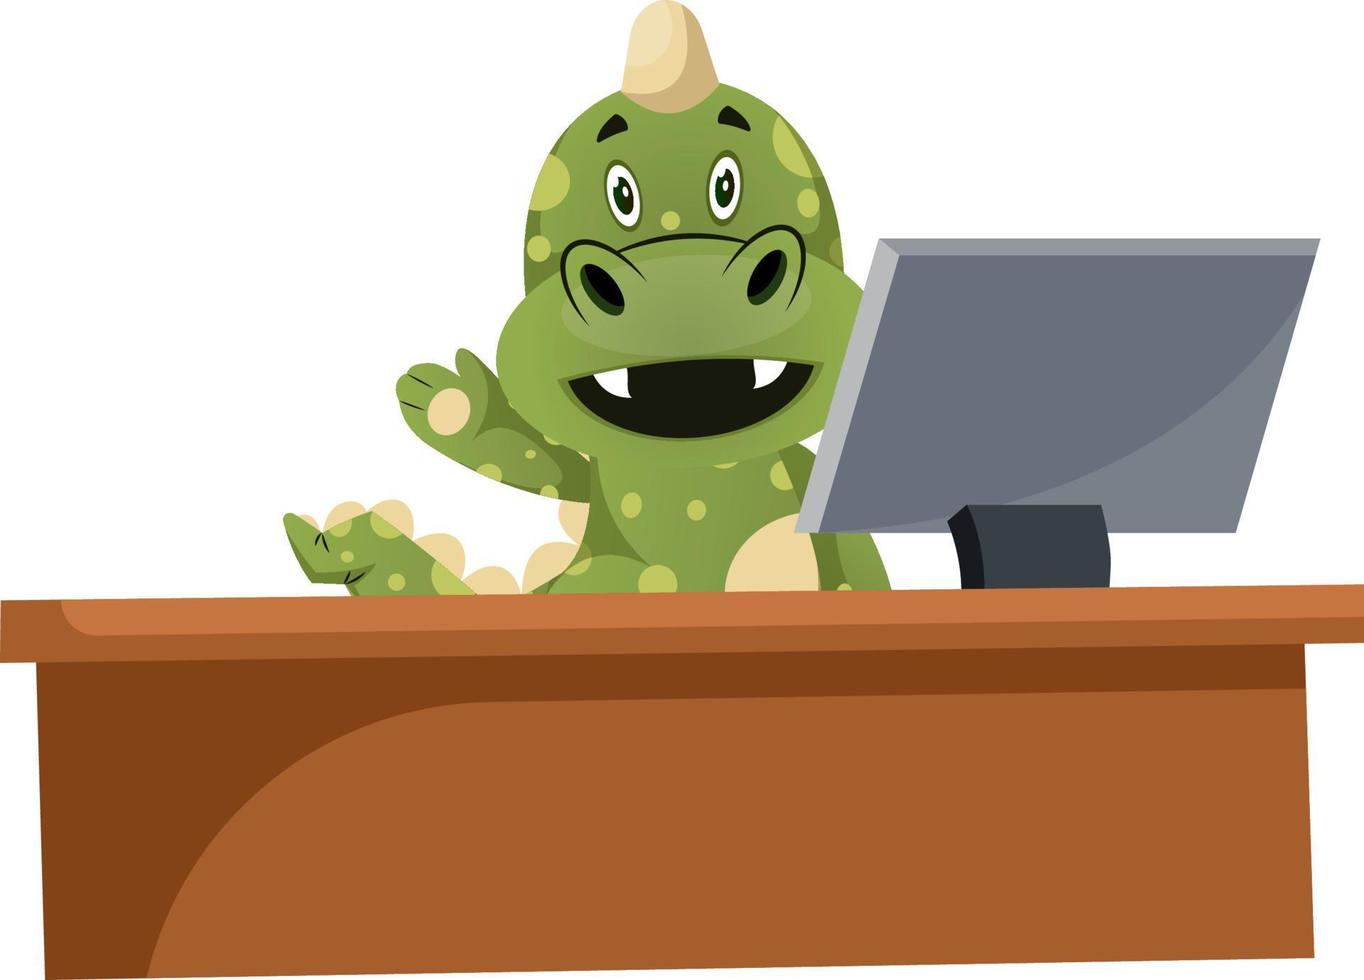 dragão verde está assistindo na tela do computador, ilustração, vetor em fundo branco.